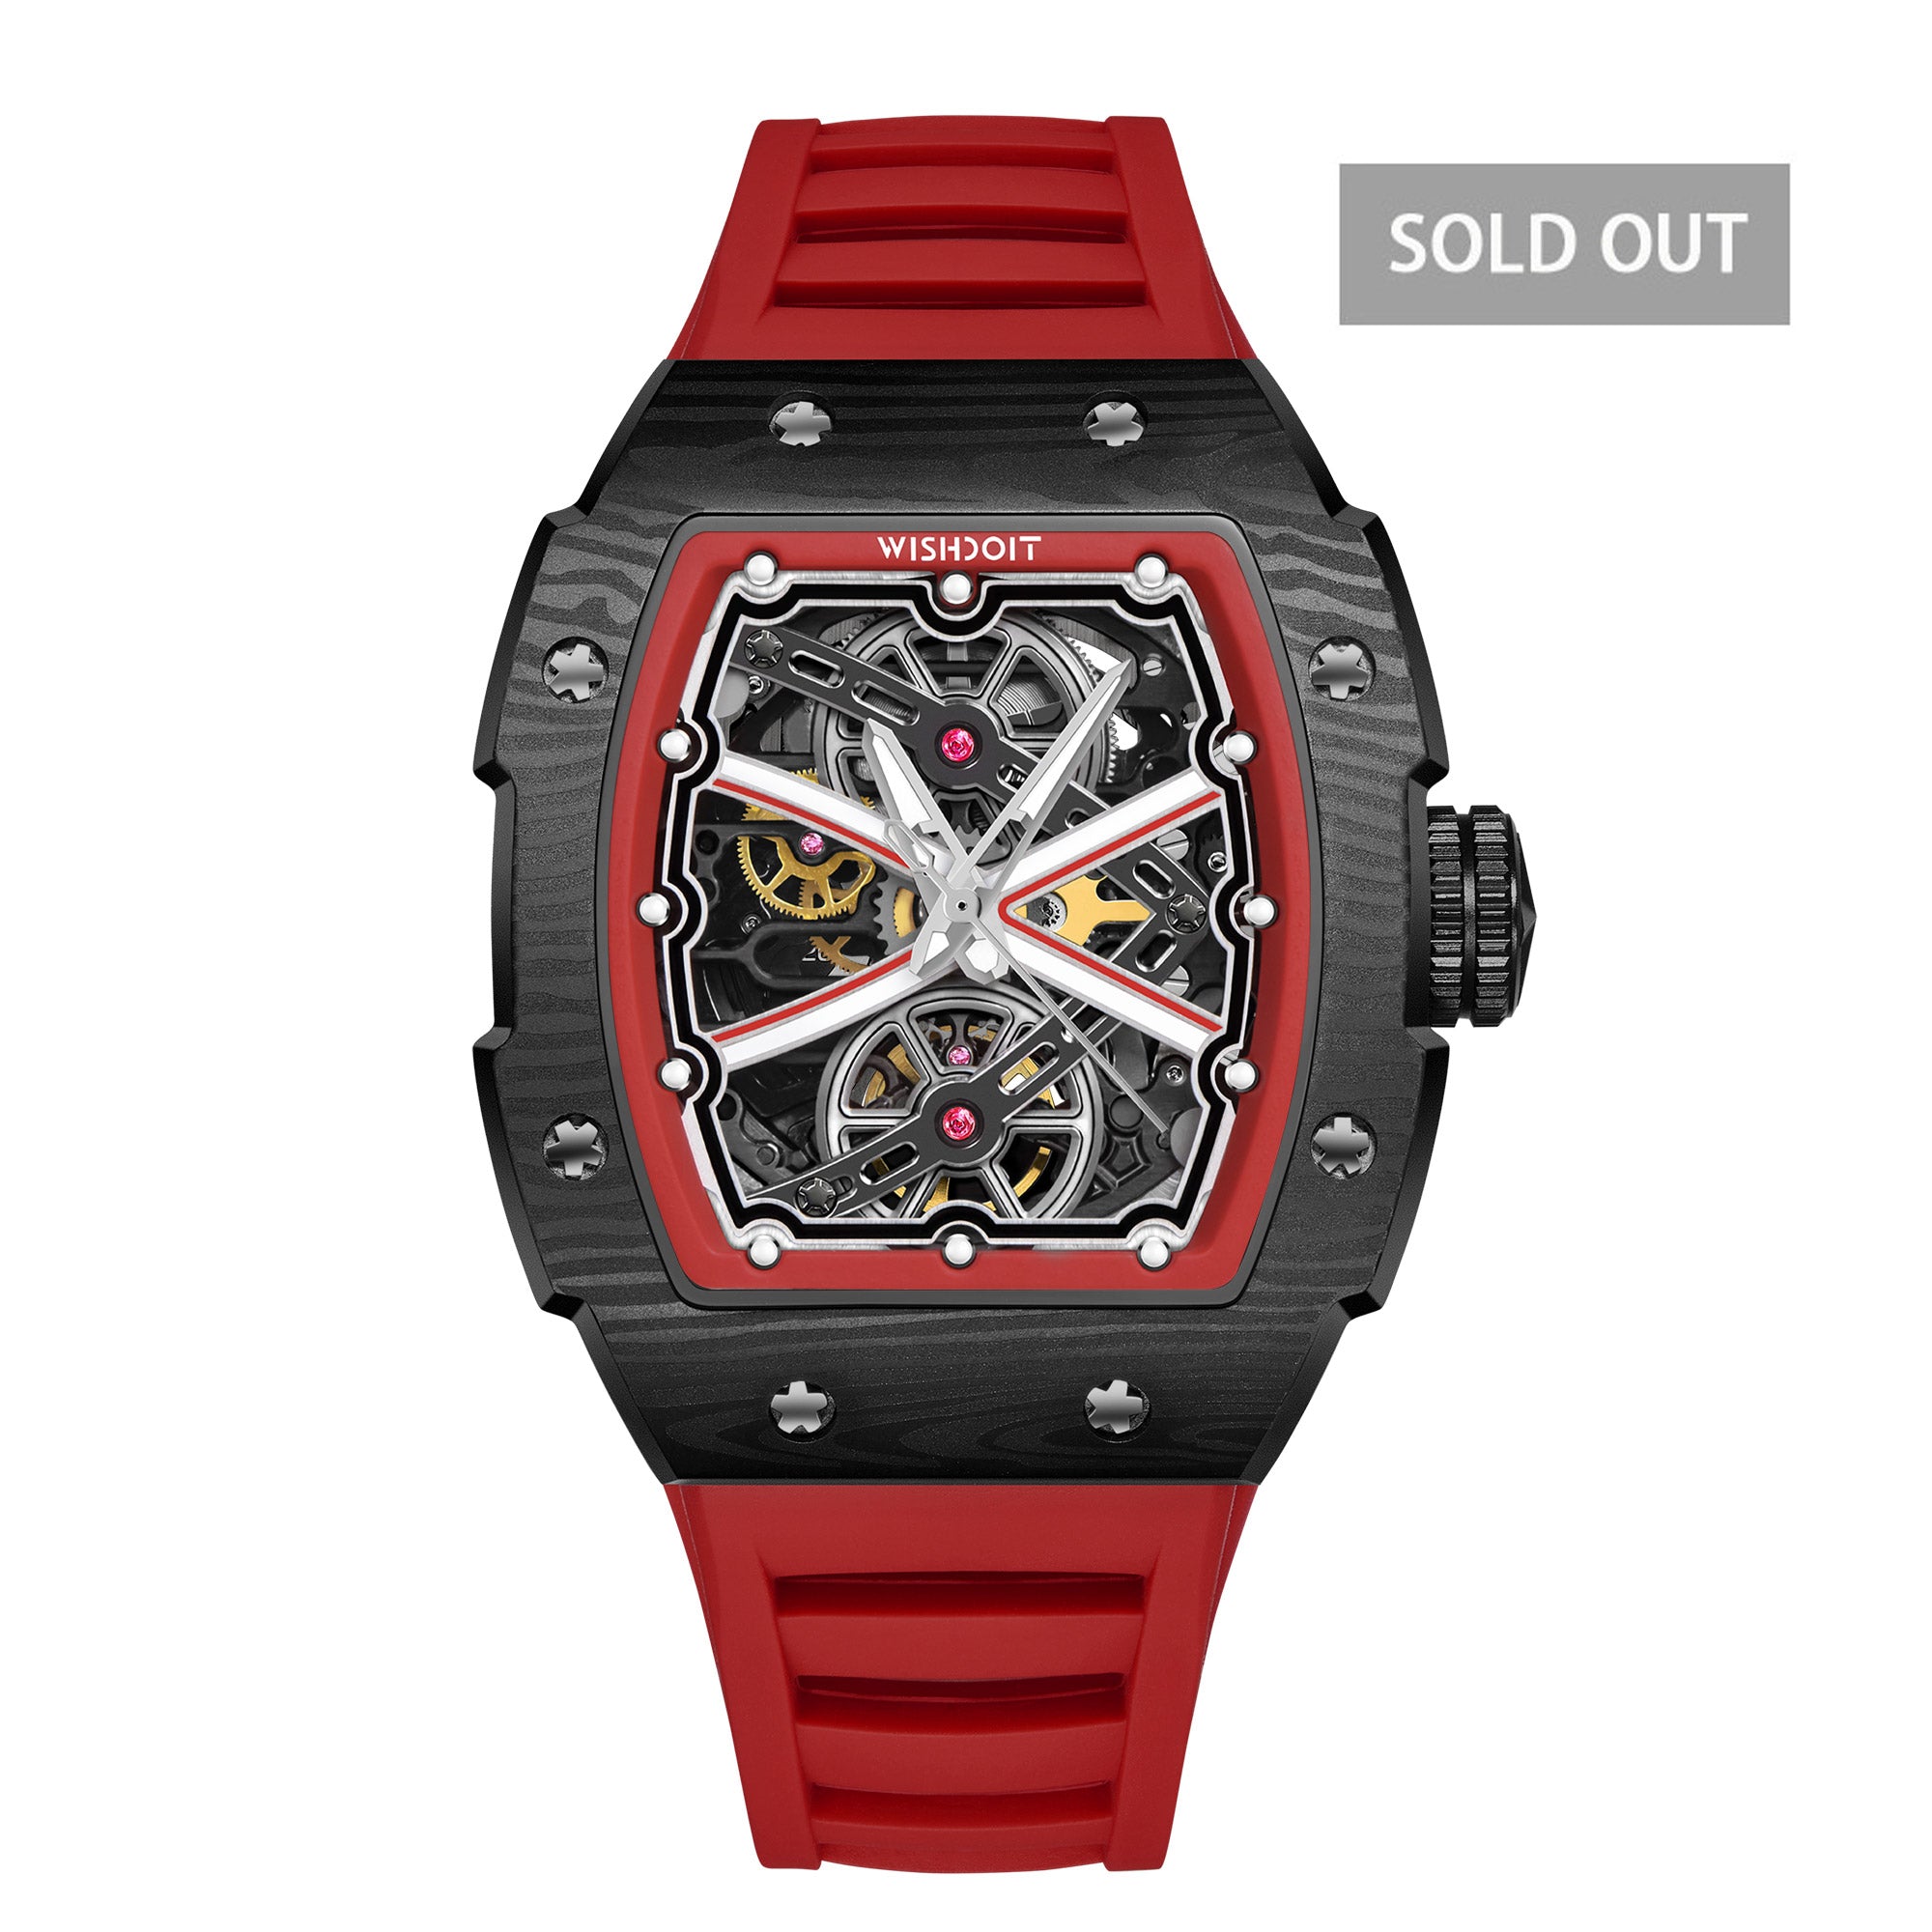 Wishdoit Watches Tonneau Affordable Best Mens mechanical Watch | Fluorine Rubber Watch Strap